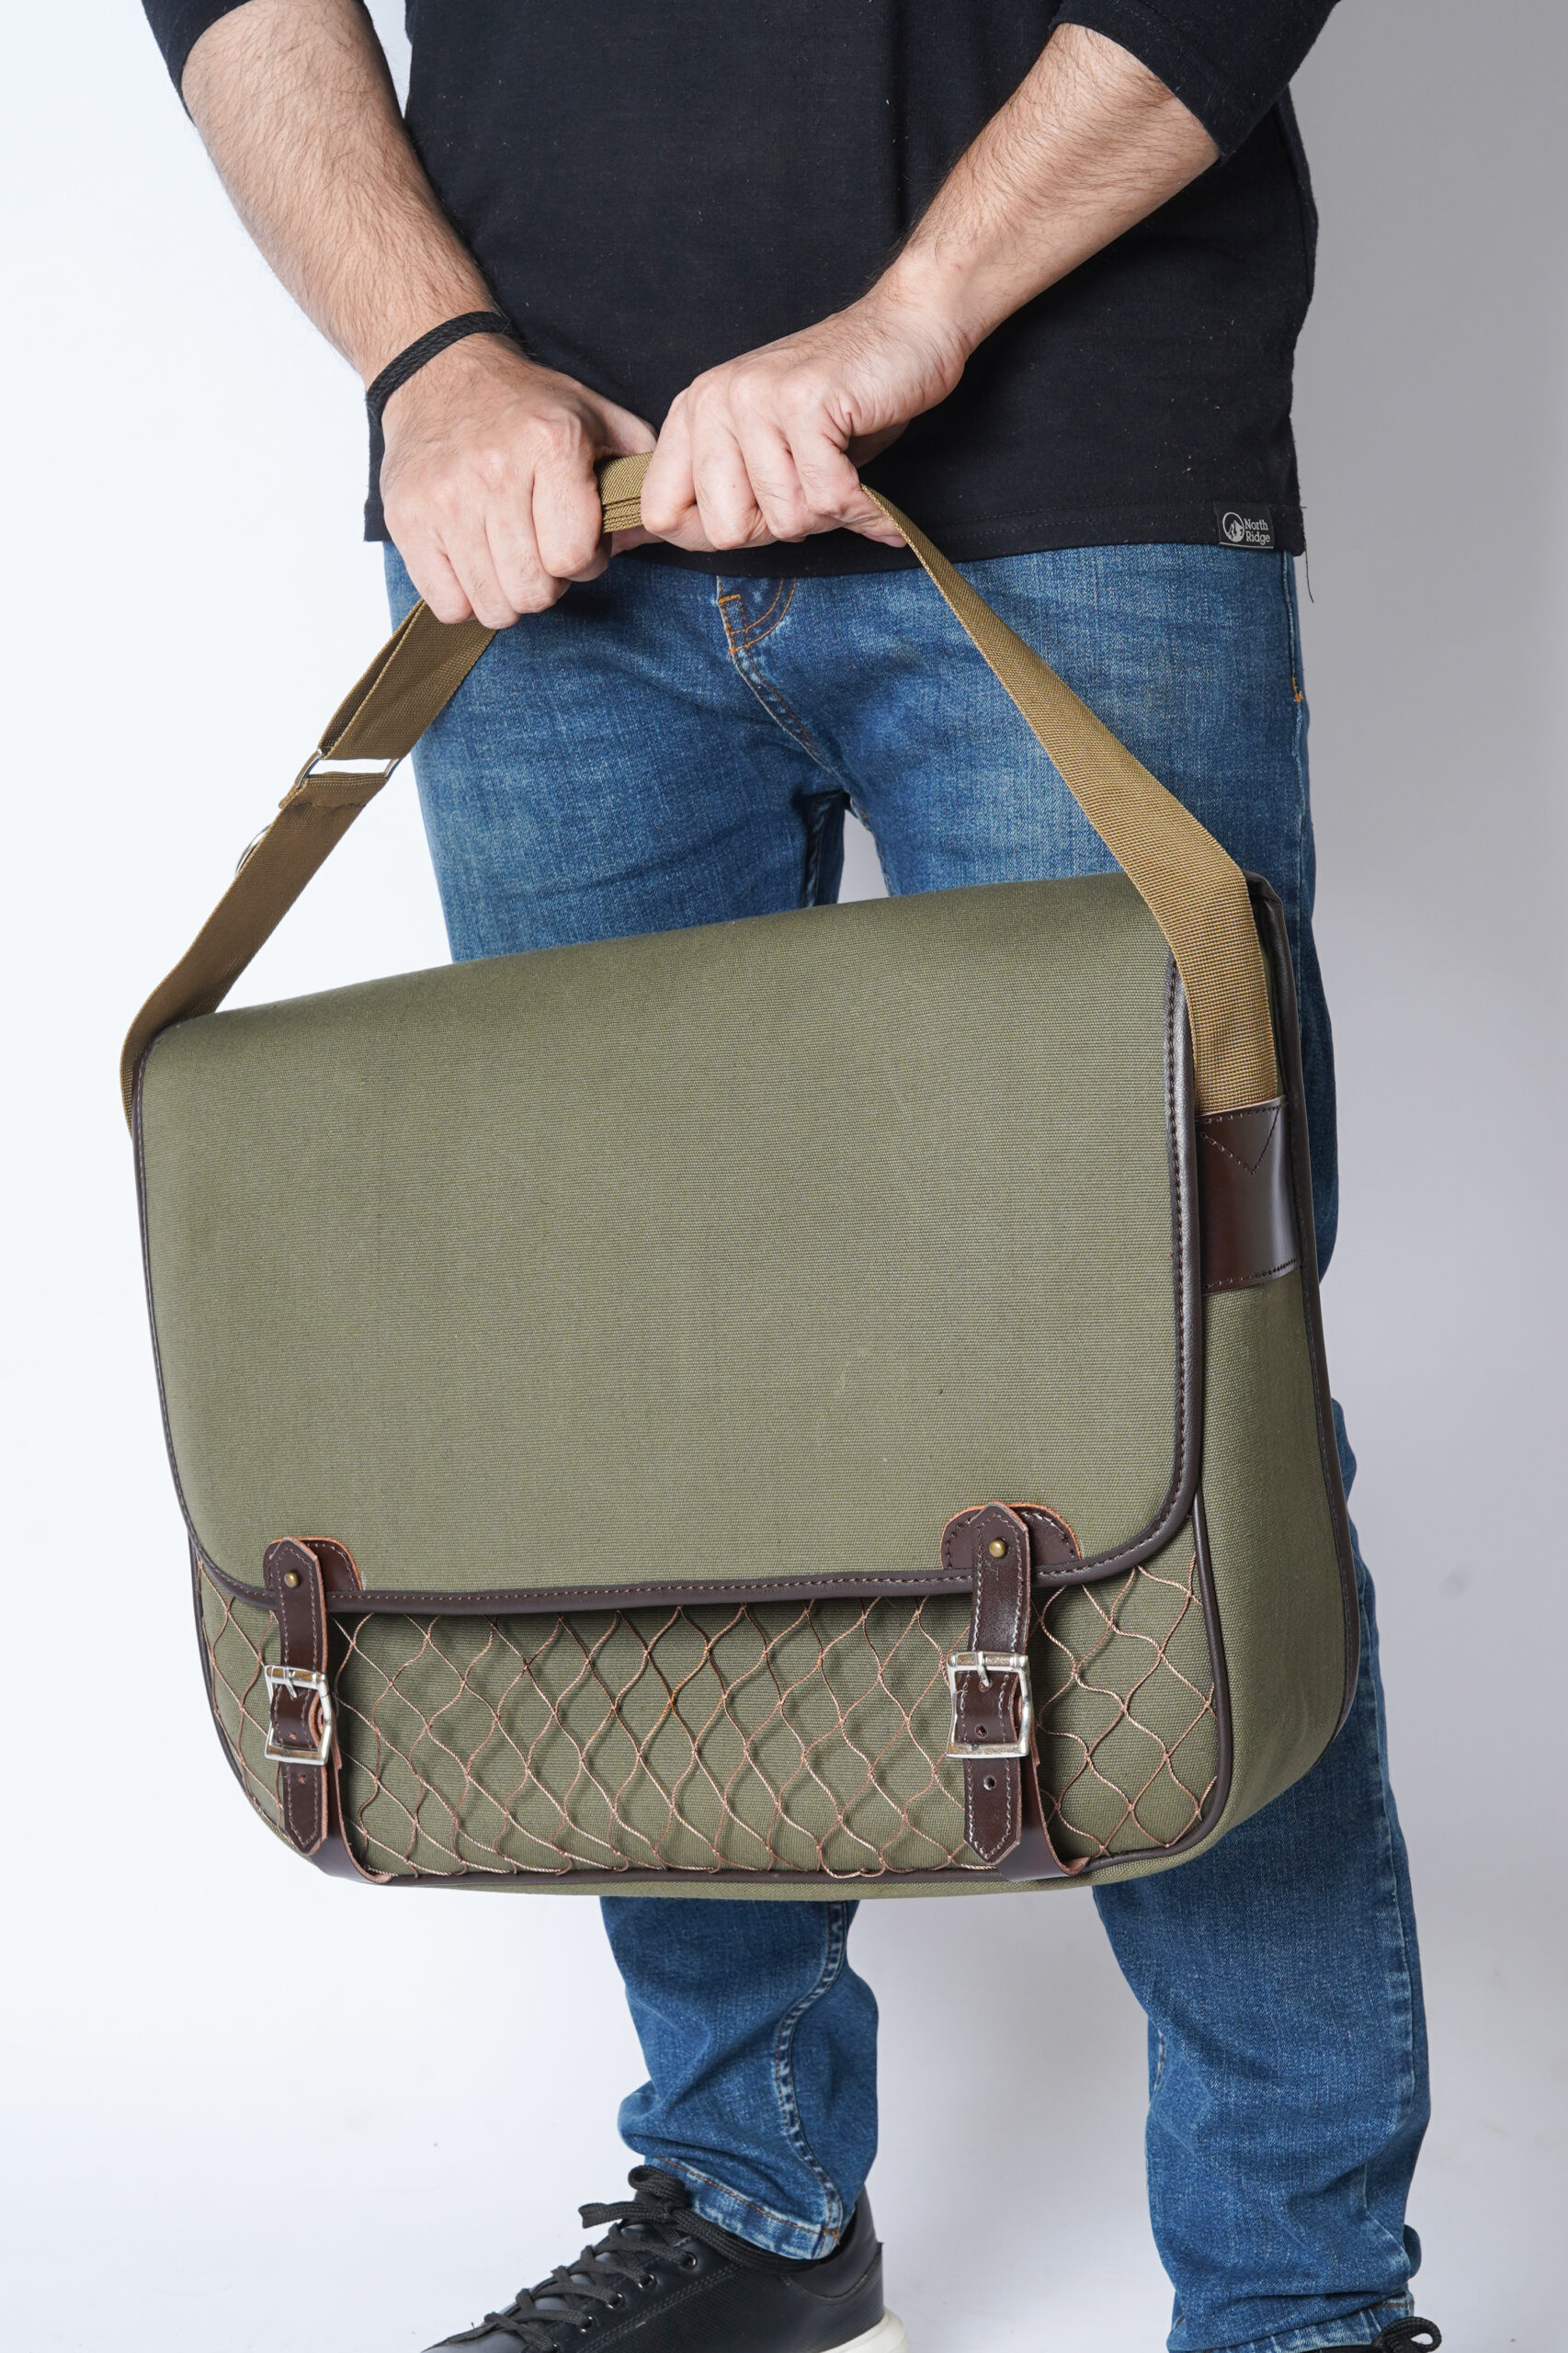 canvas leather bag, canvas satchel bag, fishnet Game bag